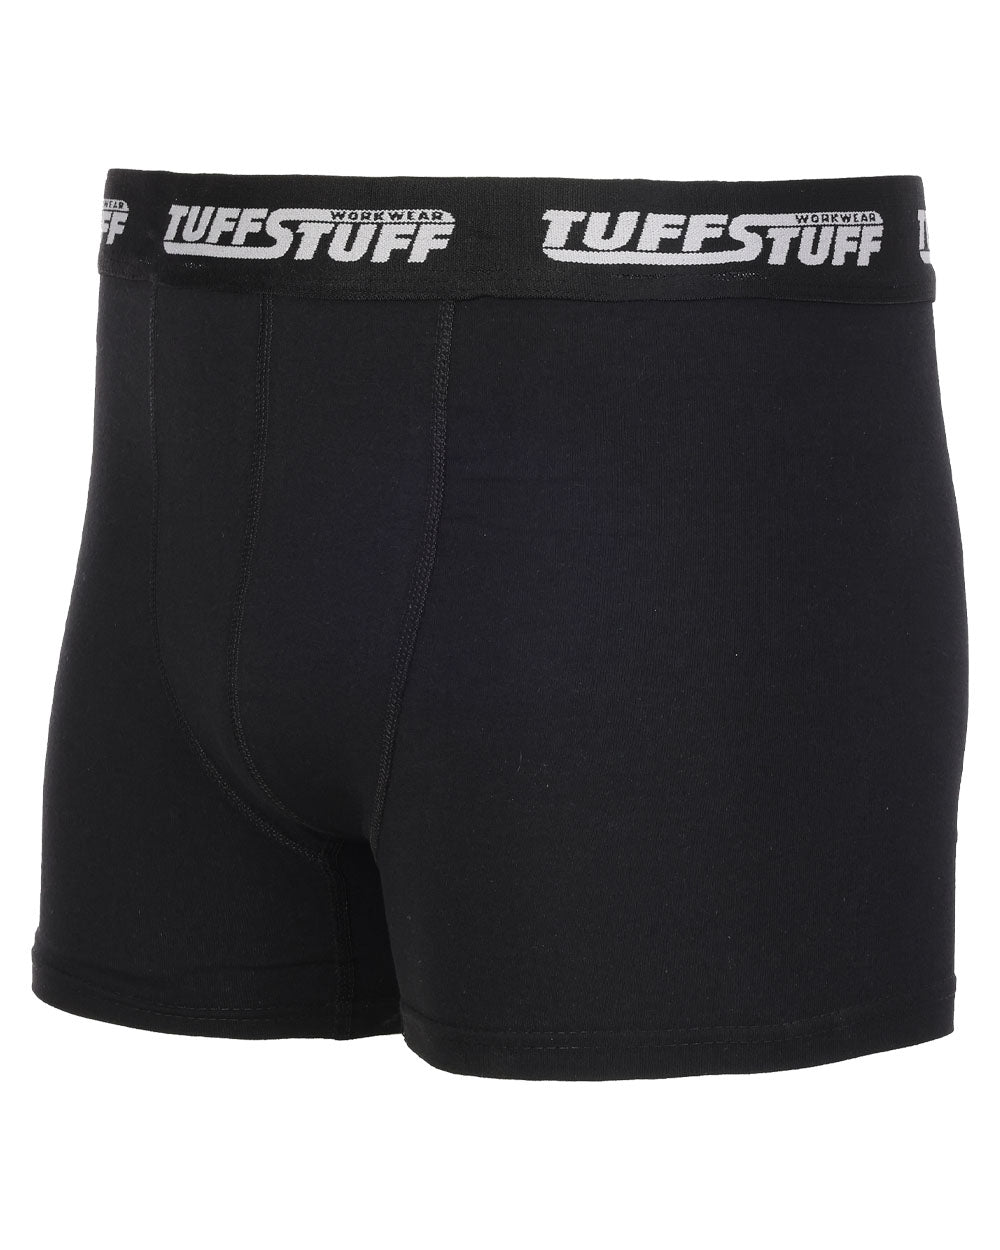 Black coloured TuffStuff Elite Boxers on White Background